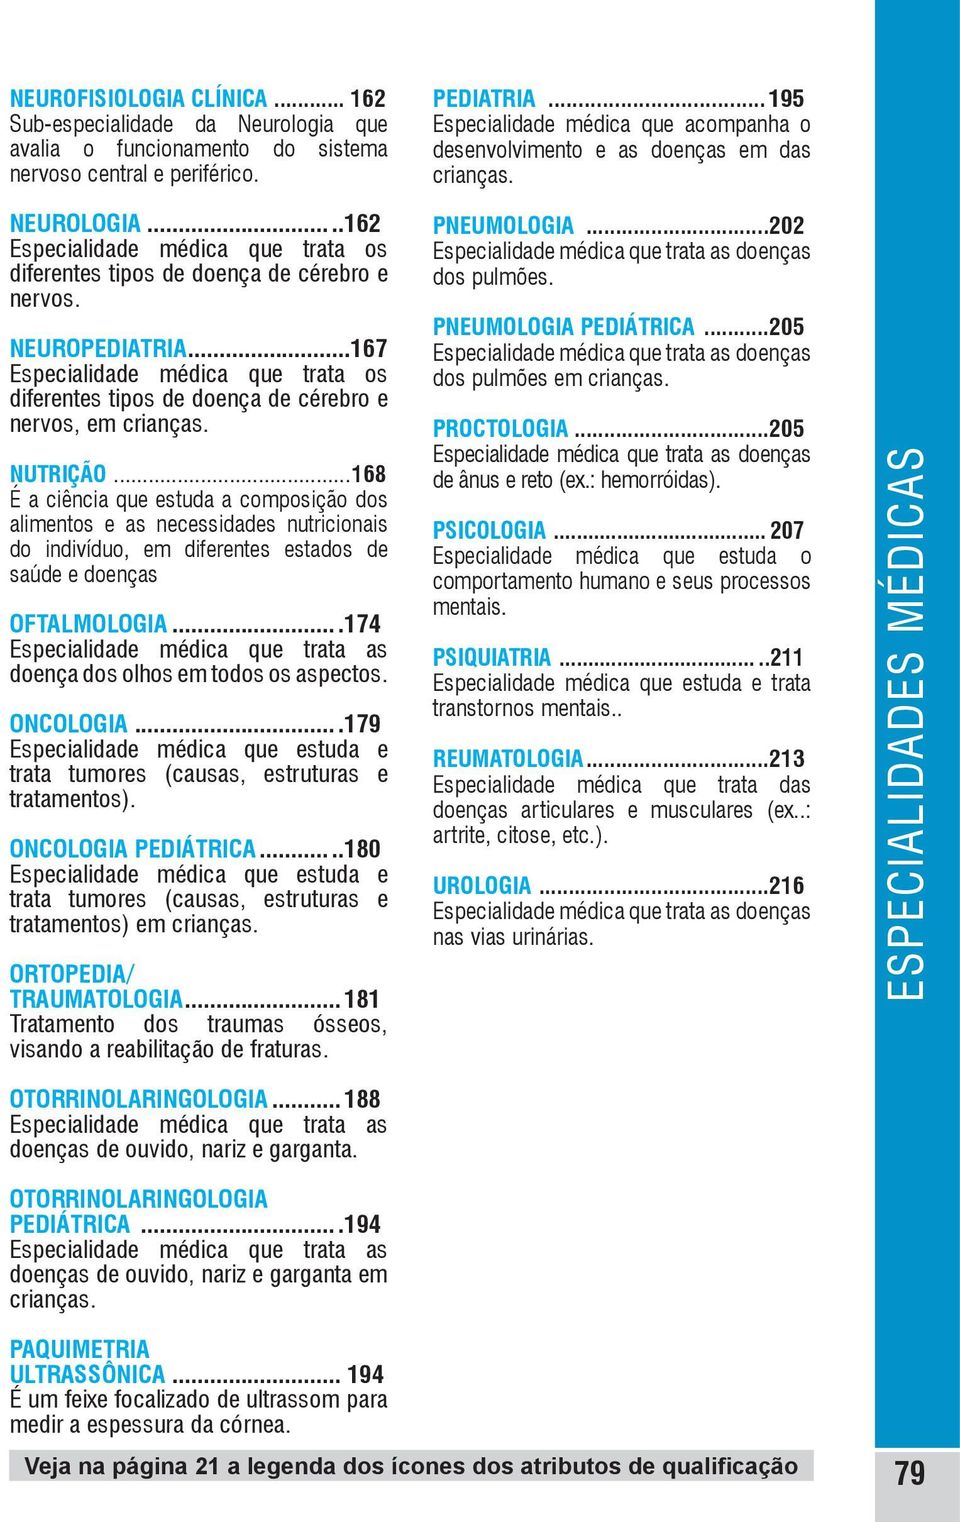 NEUROPEDIATRIA...167 Especialidade médica que trata os diferentes tipos de doença de cérebro e nervos, em crianças. NUTRIÇÃO.